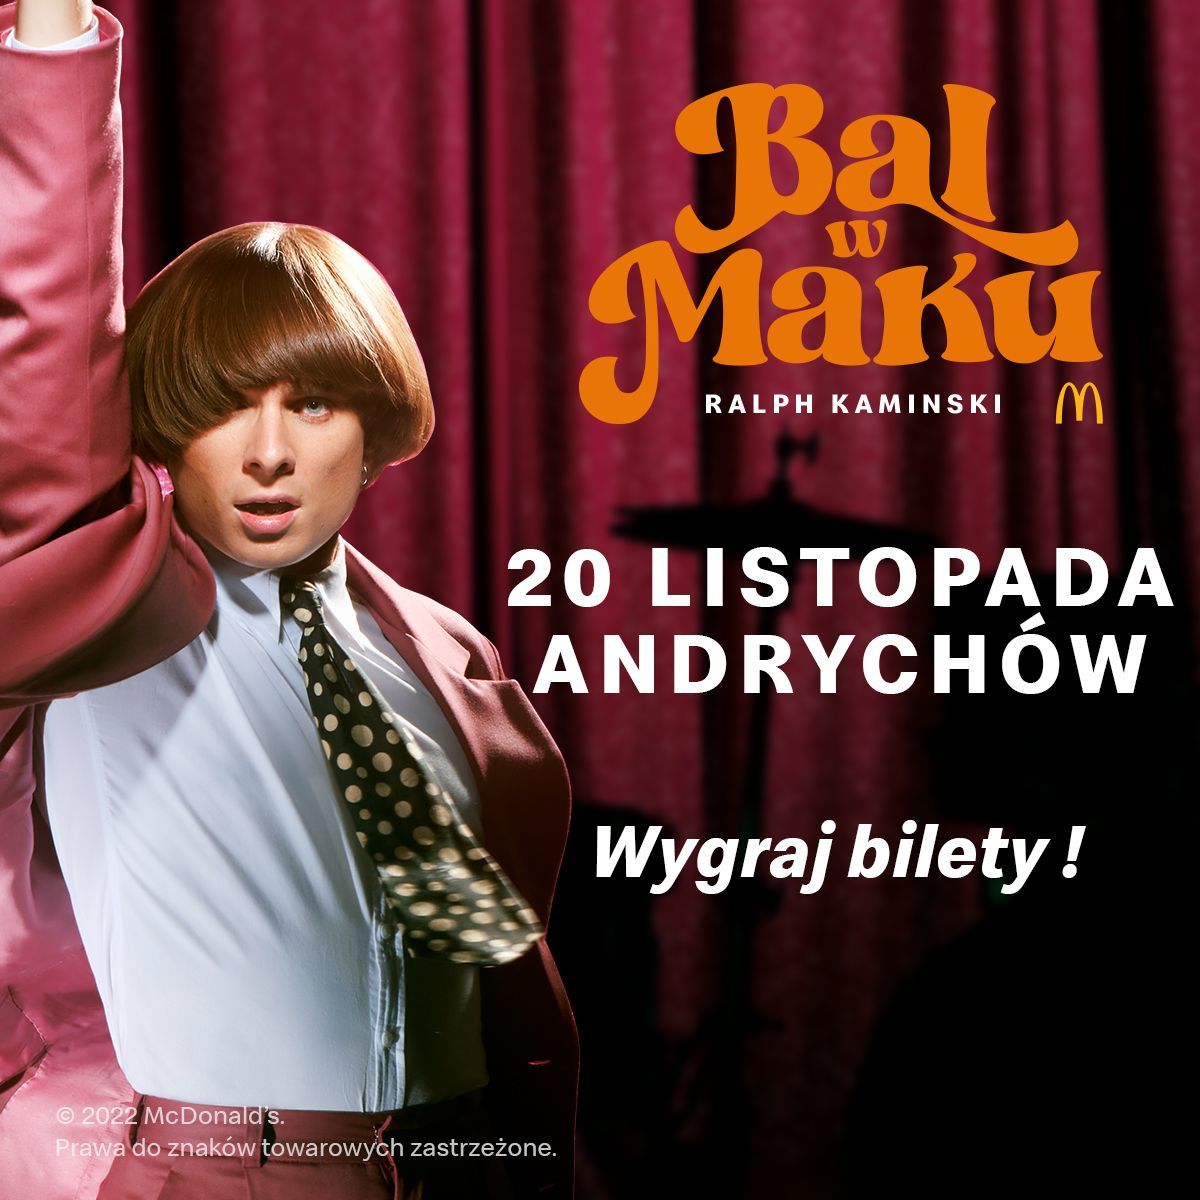 20 listopada Bal w Maku w Andrychowie z udziałem Ralpha Kamińskiego